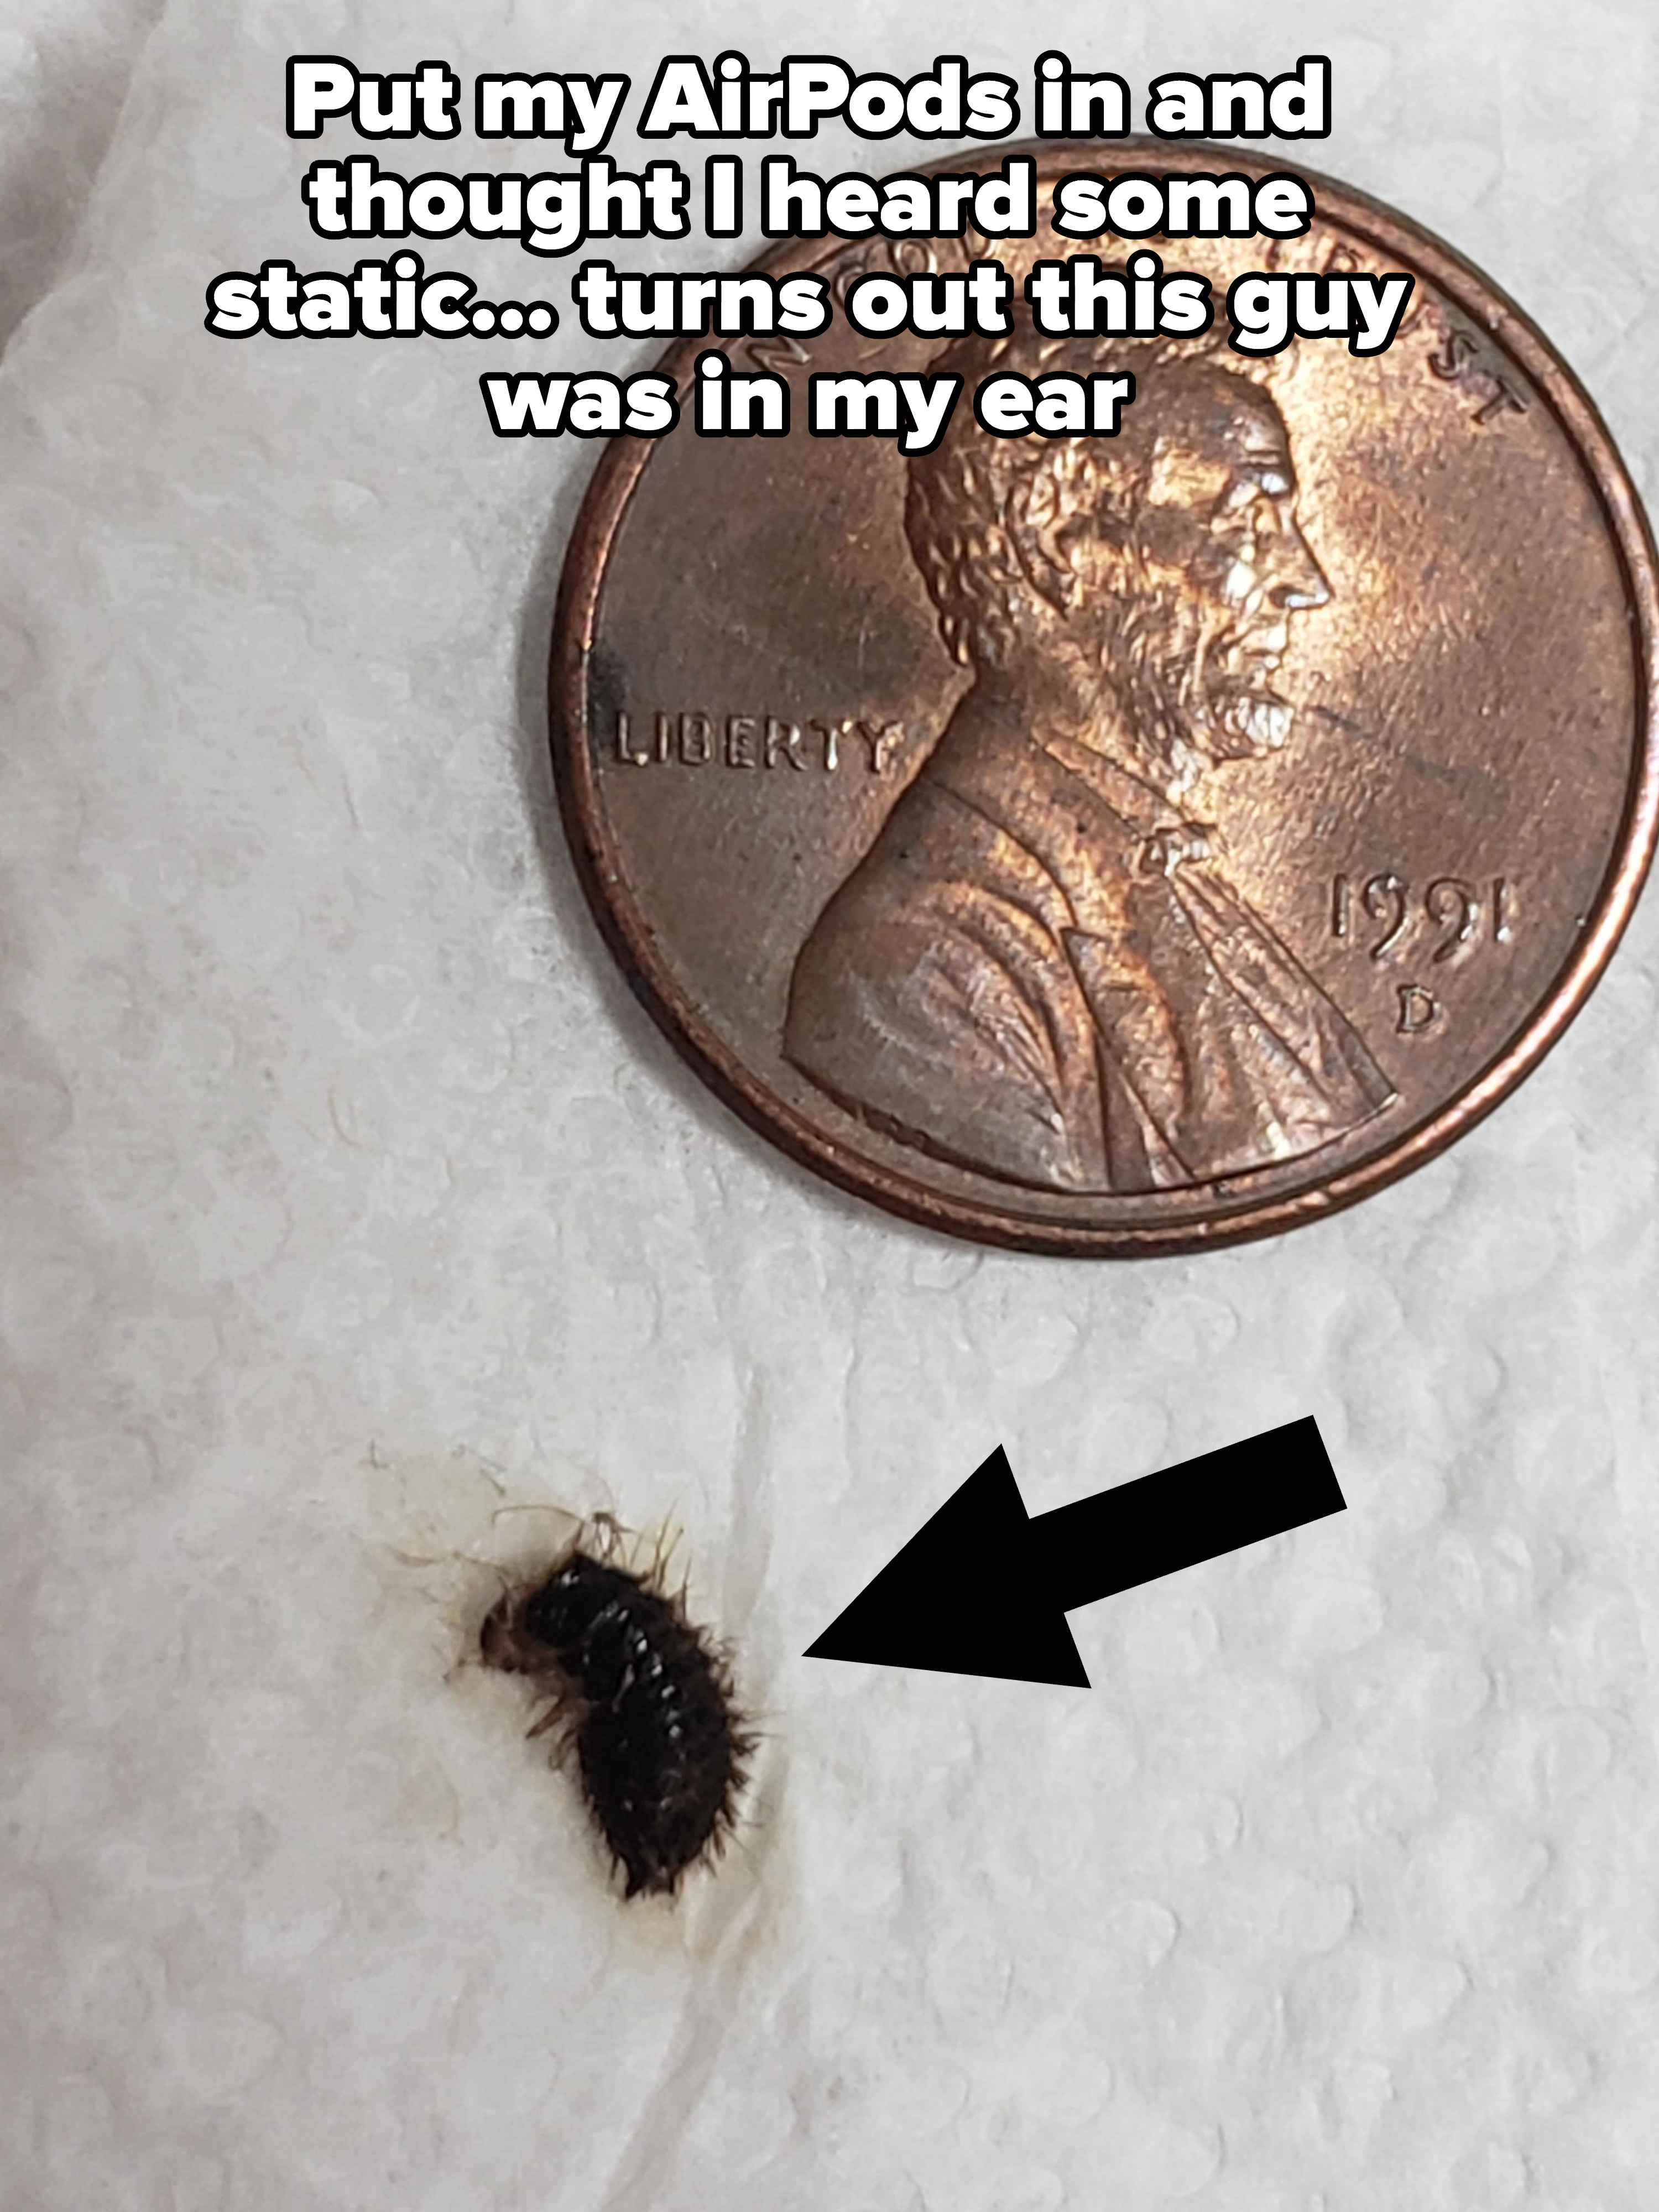 小、毛茸茸的bug发现他们AirPods内